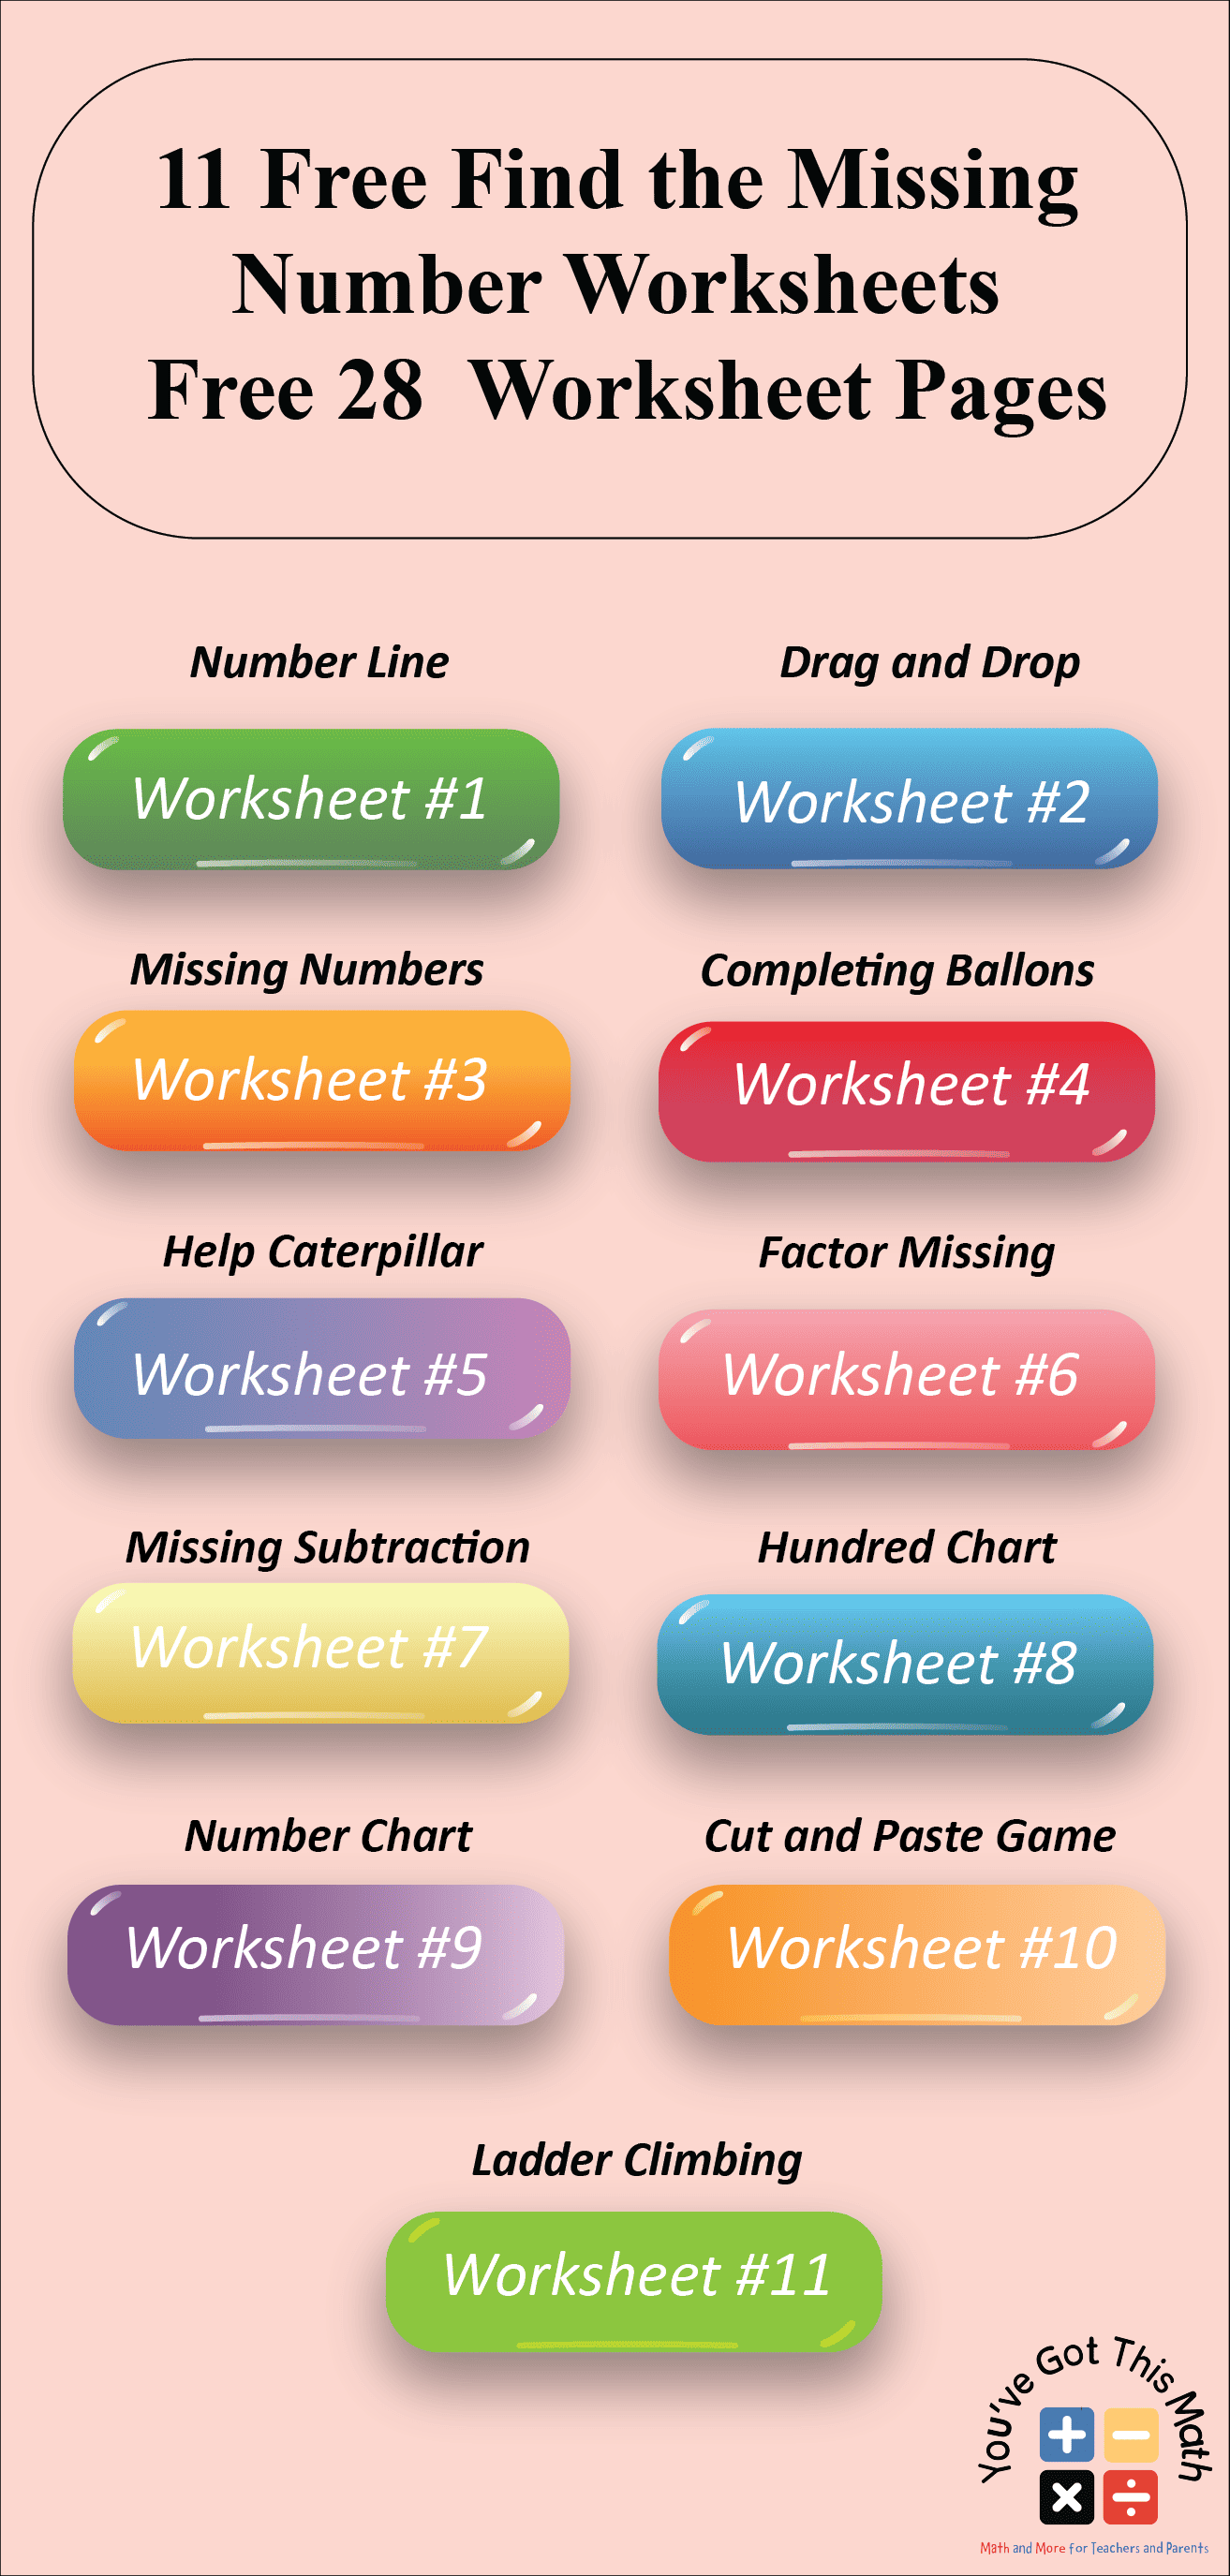 Find the Missing Number Worksheets